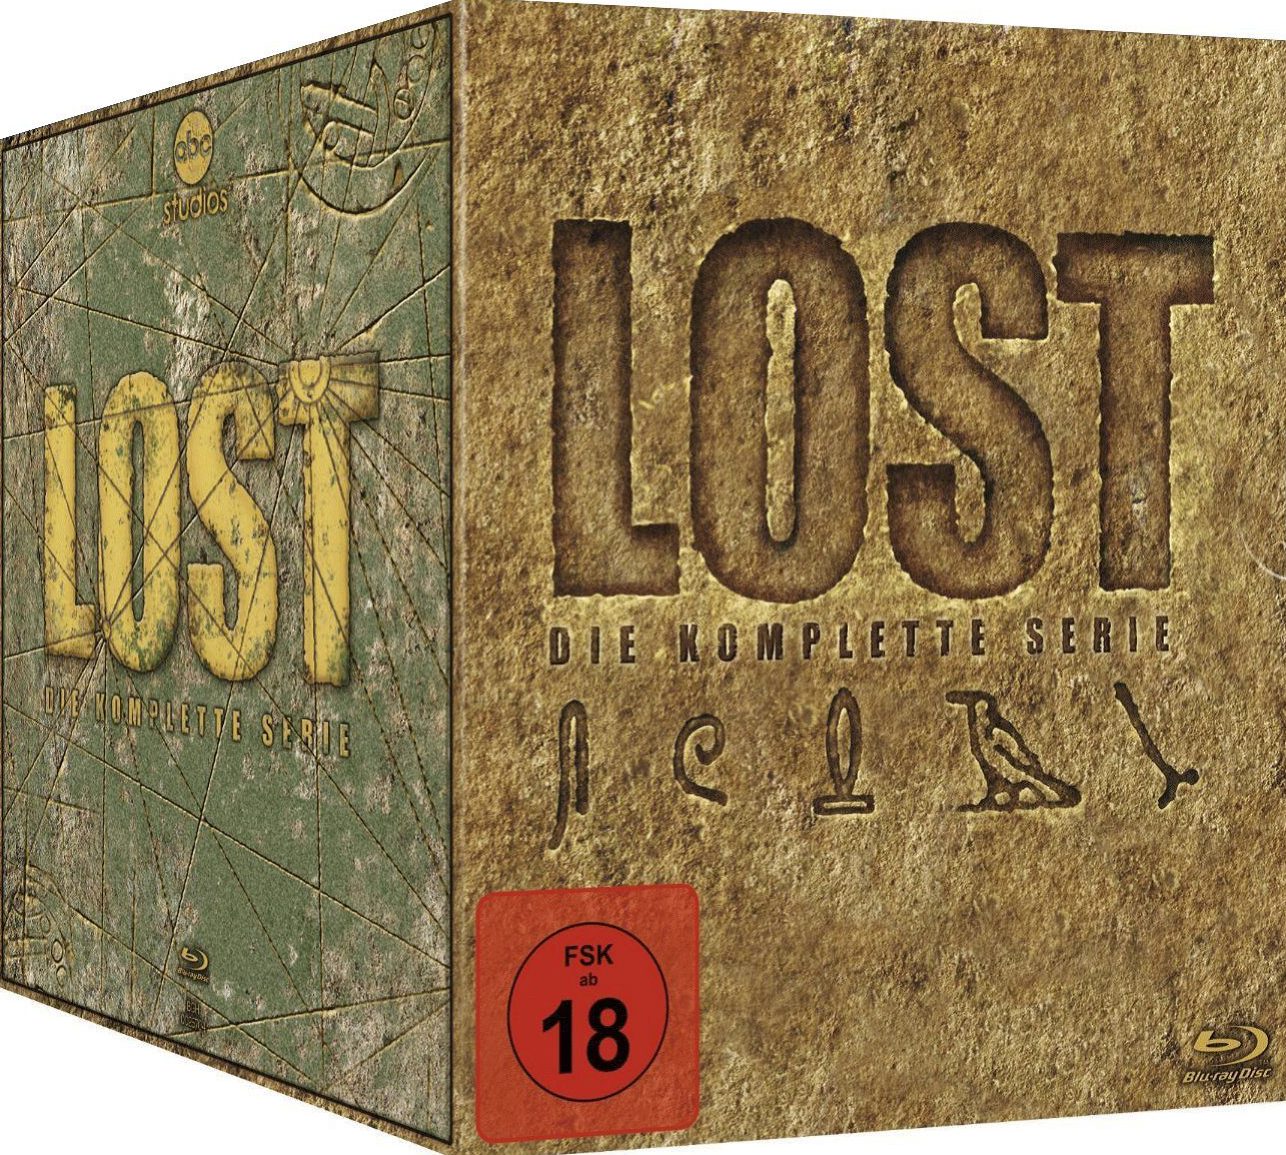 Serienkritik: Lost (Staffel 1-6)